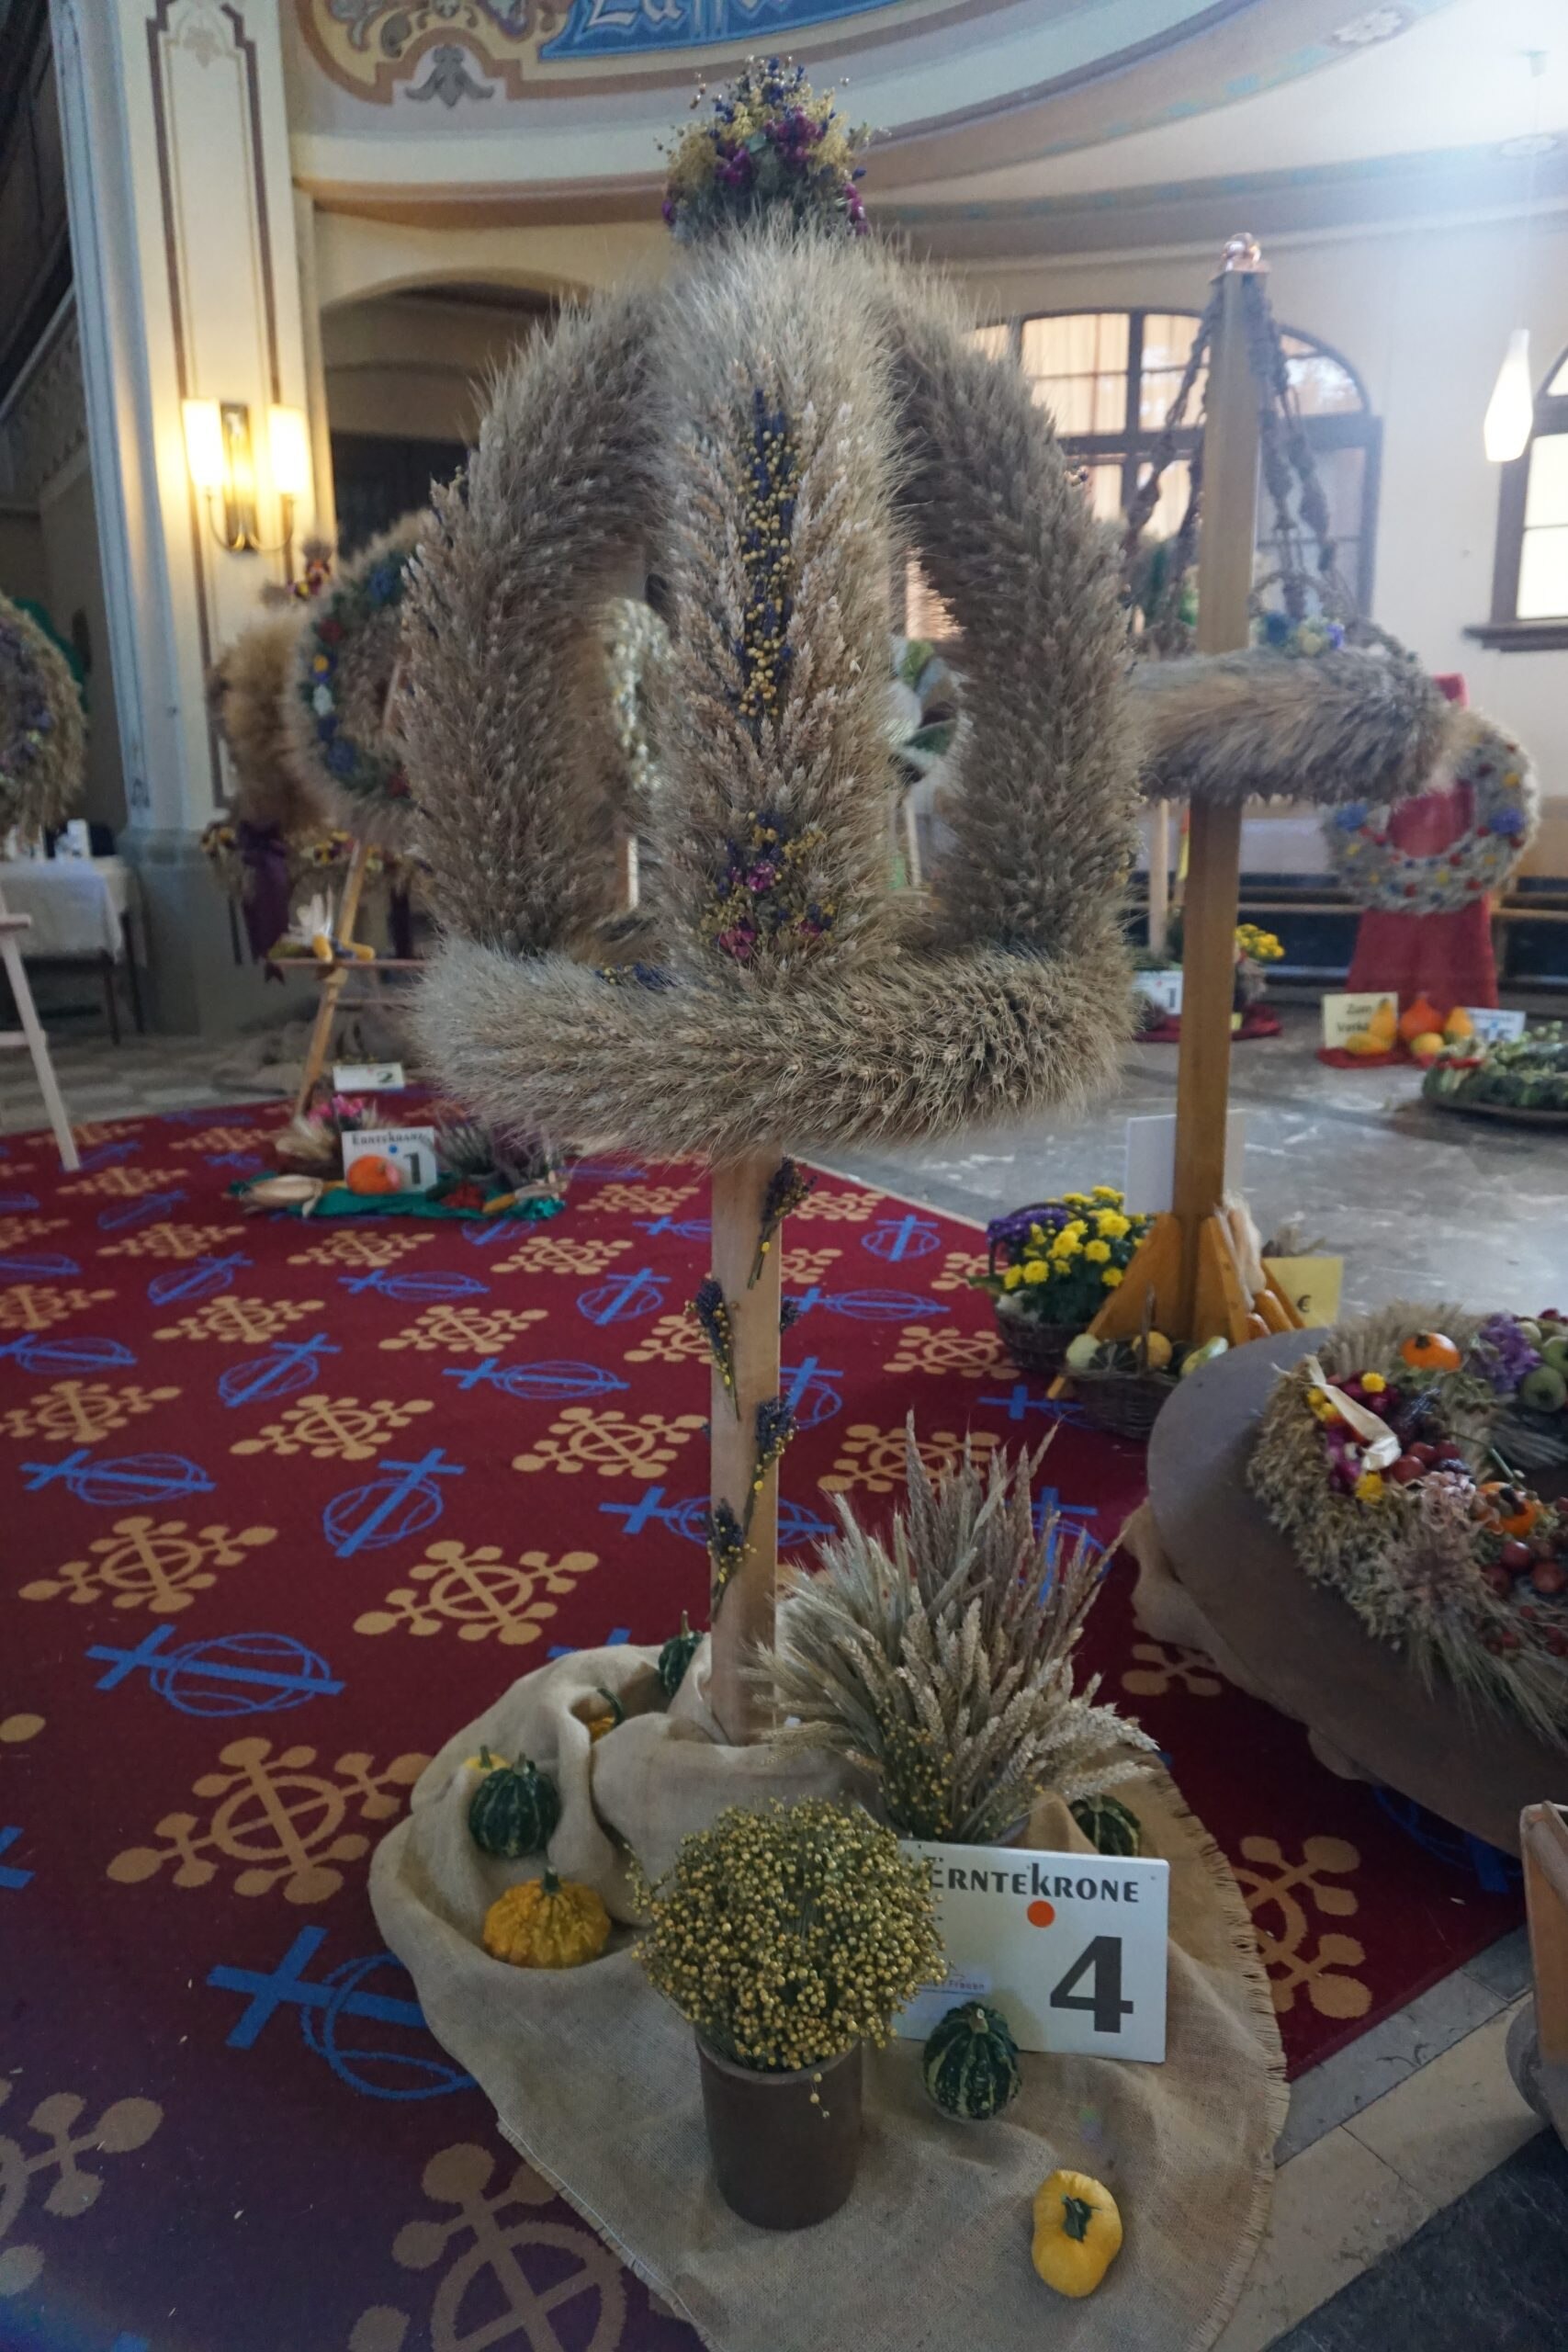 Erntekrone Nummer 4 aus Getreide mit Blumenschmuck und Dekoration aus Früchten und Blumen am Boden.